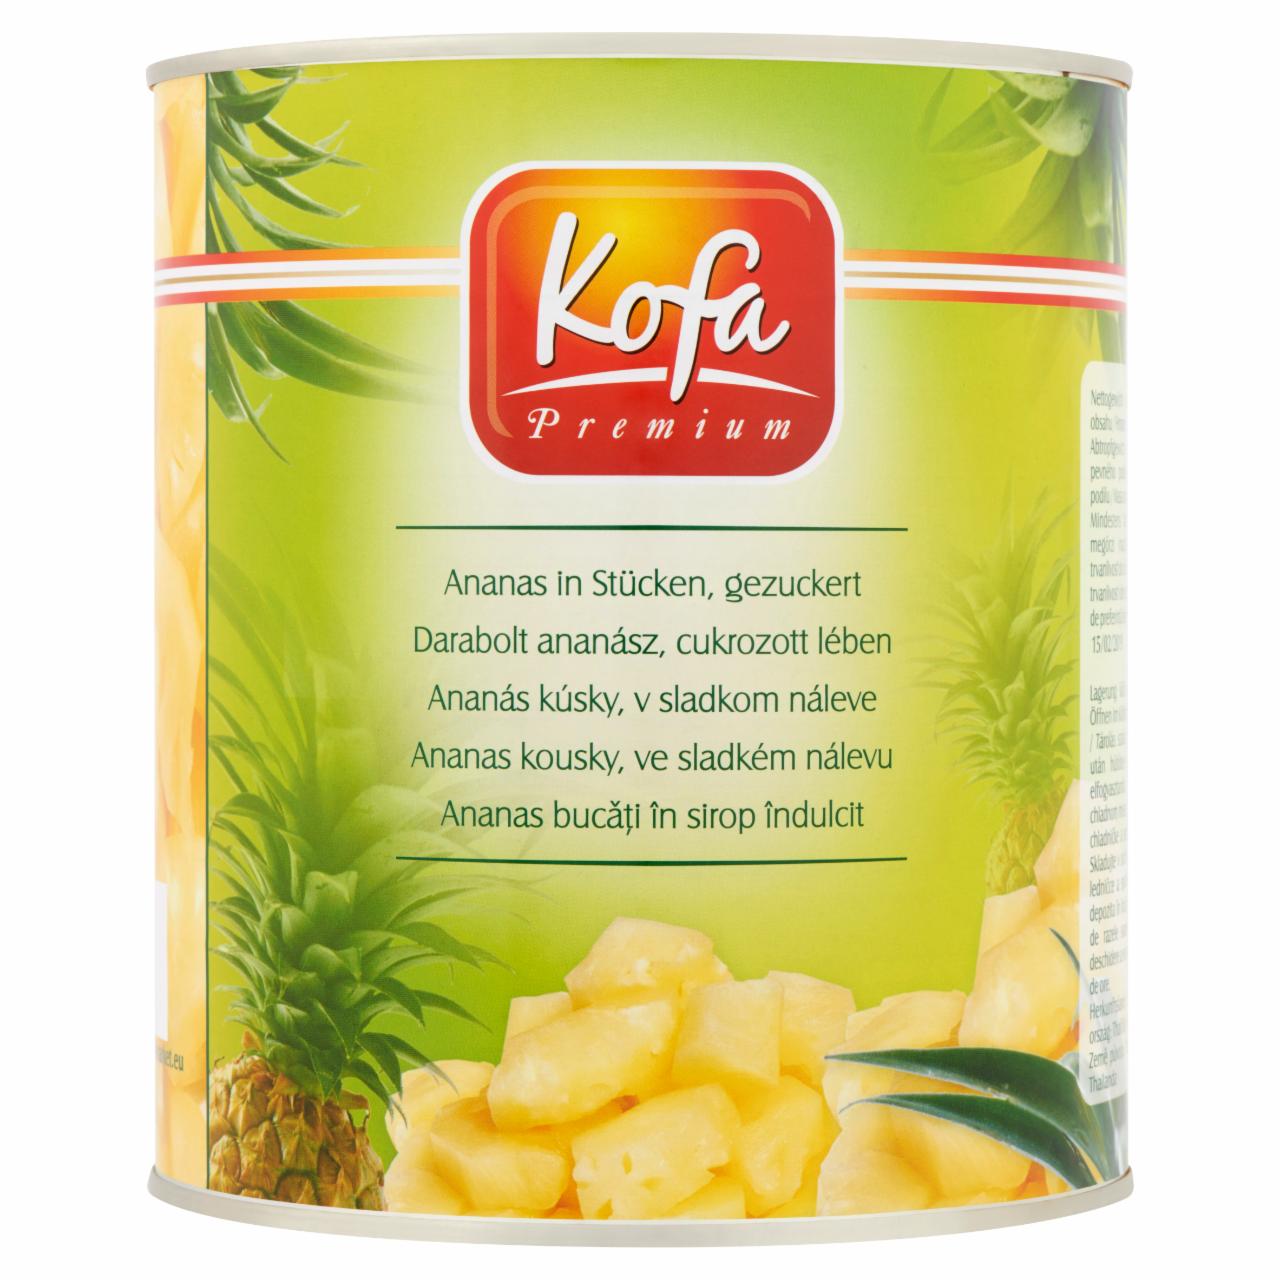 Képek - Kofa Premium darabolt ananász, cukrozott lében 3050 g